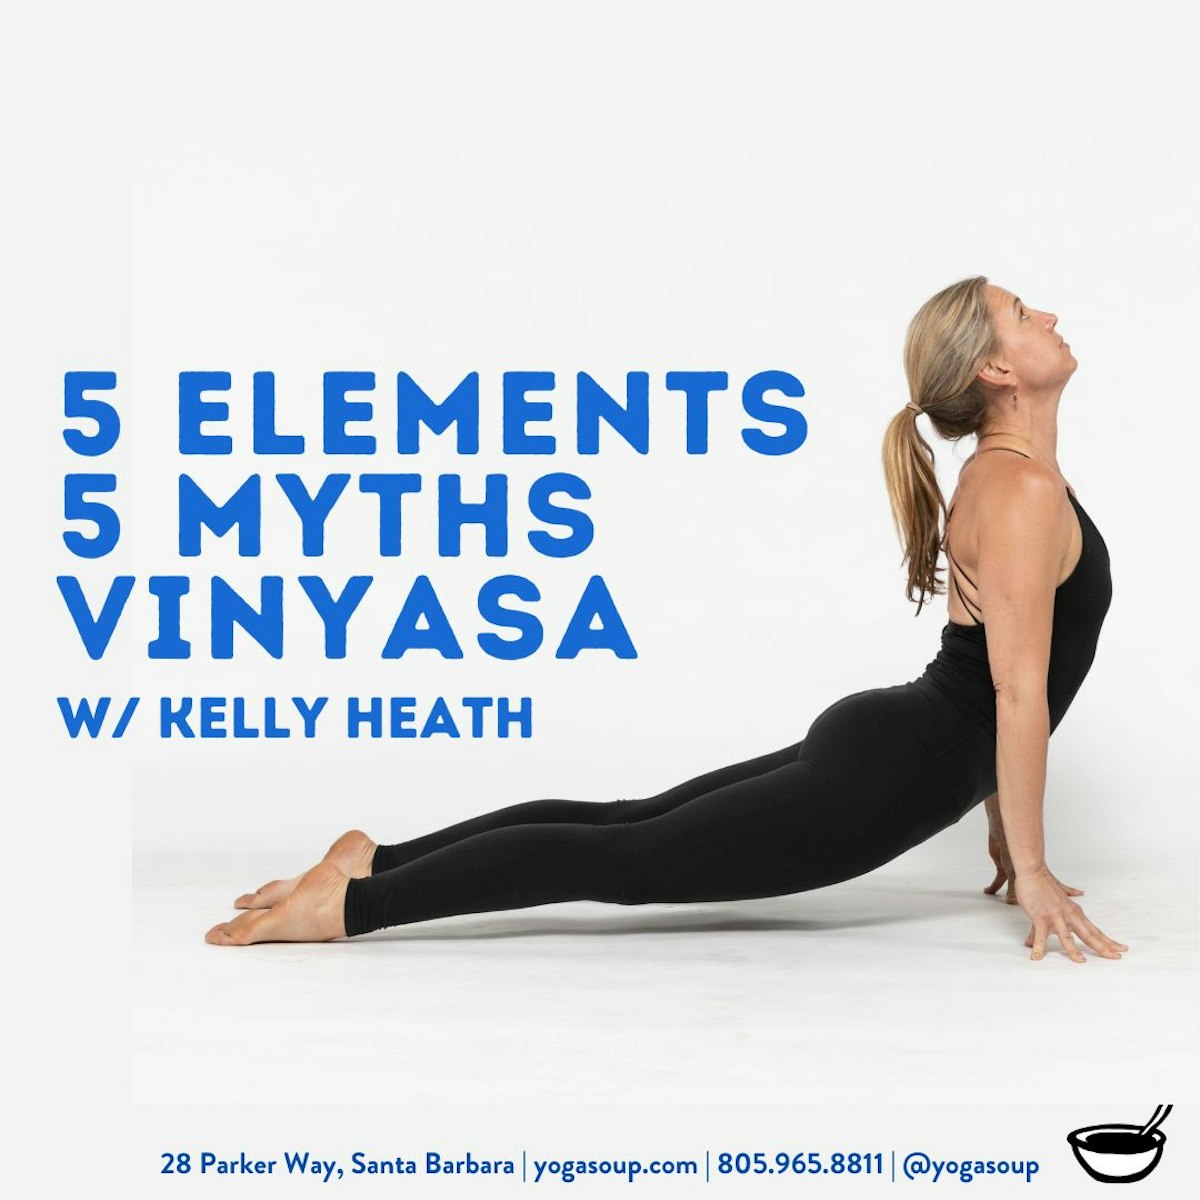 5 Vinyasa Yoga Poses for Beginners